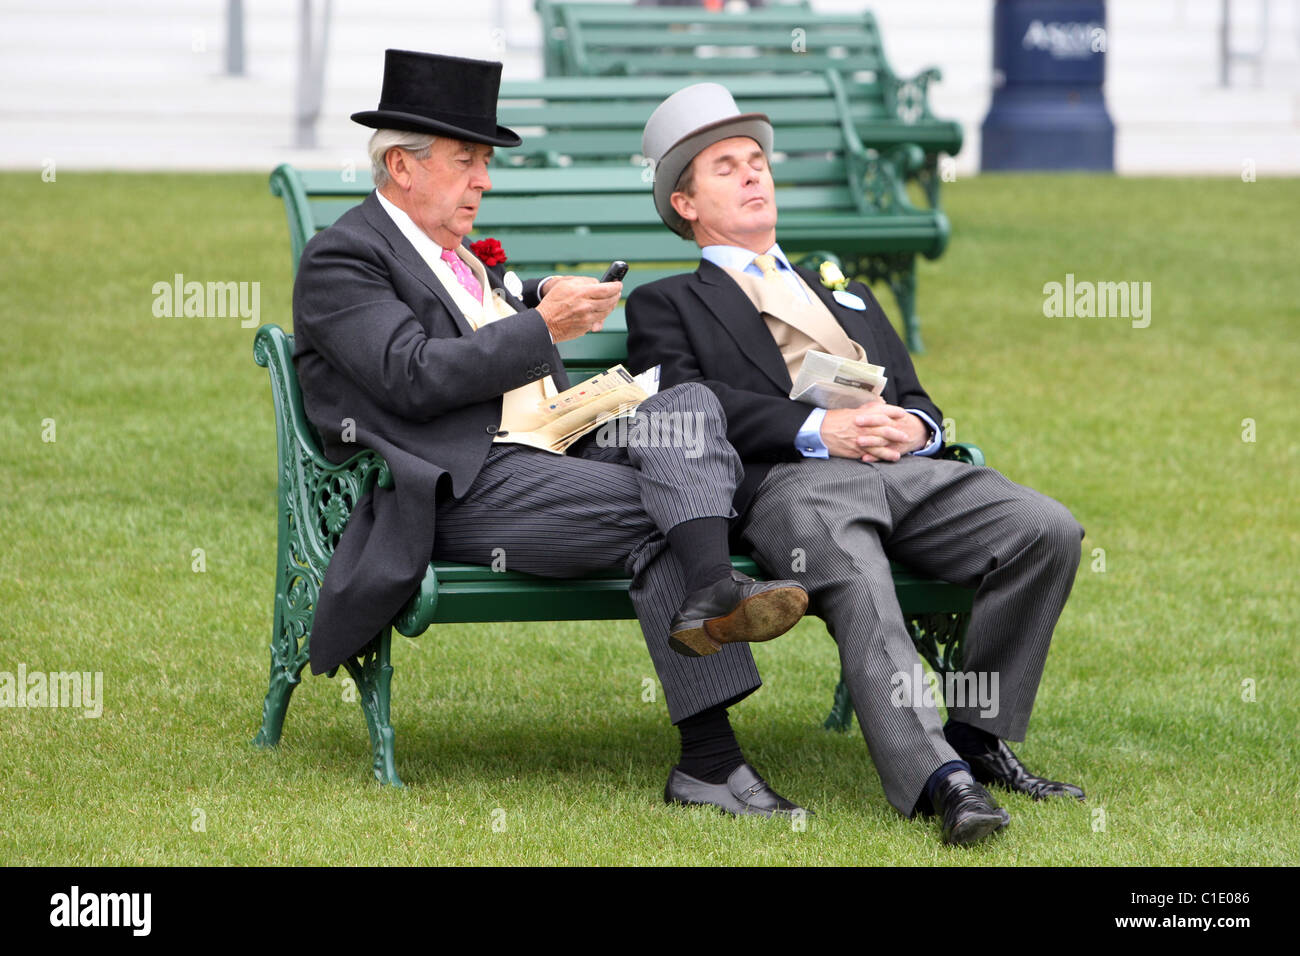 Élégamment vêtue, assis sur un banc, l'Ascot, Royaume-Uni Banque D'Images